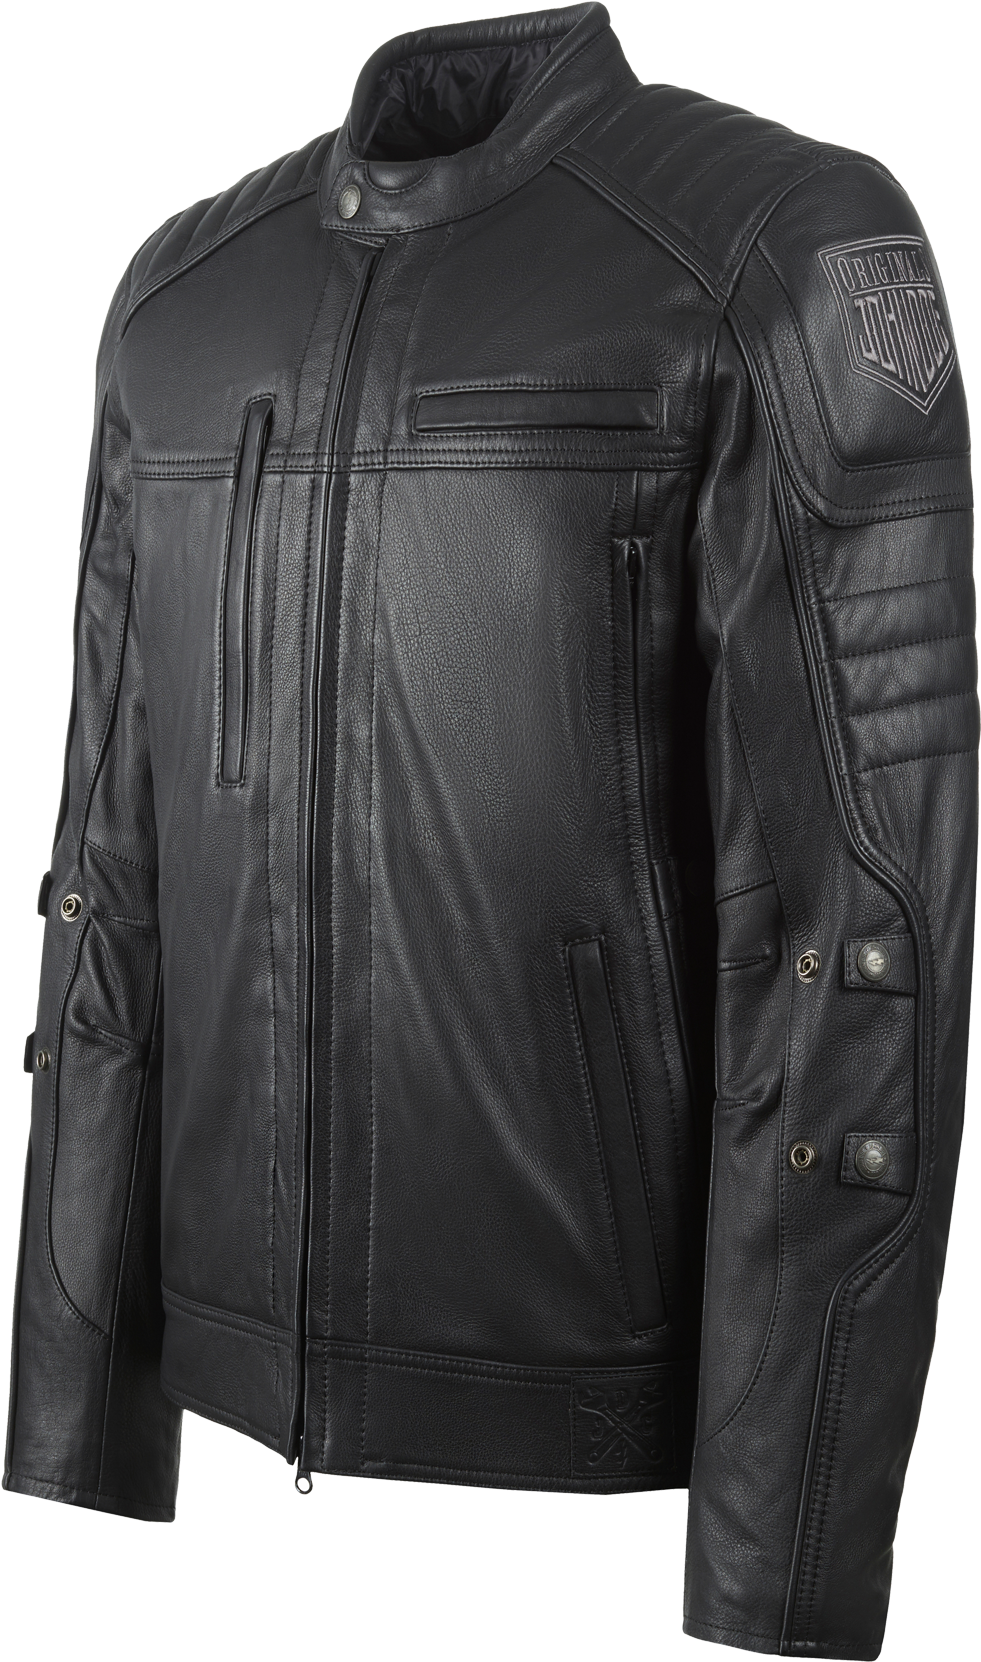 John Doe - Leather Jacket (1300x1735), Png Download